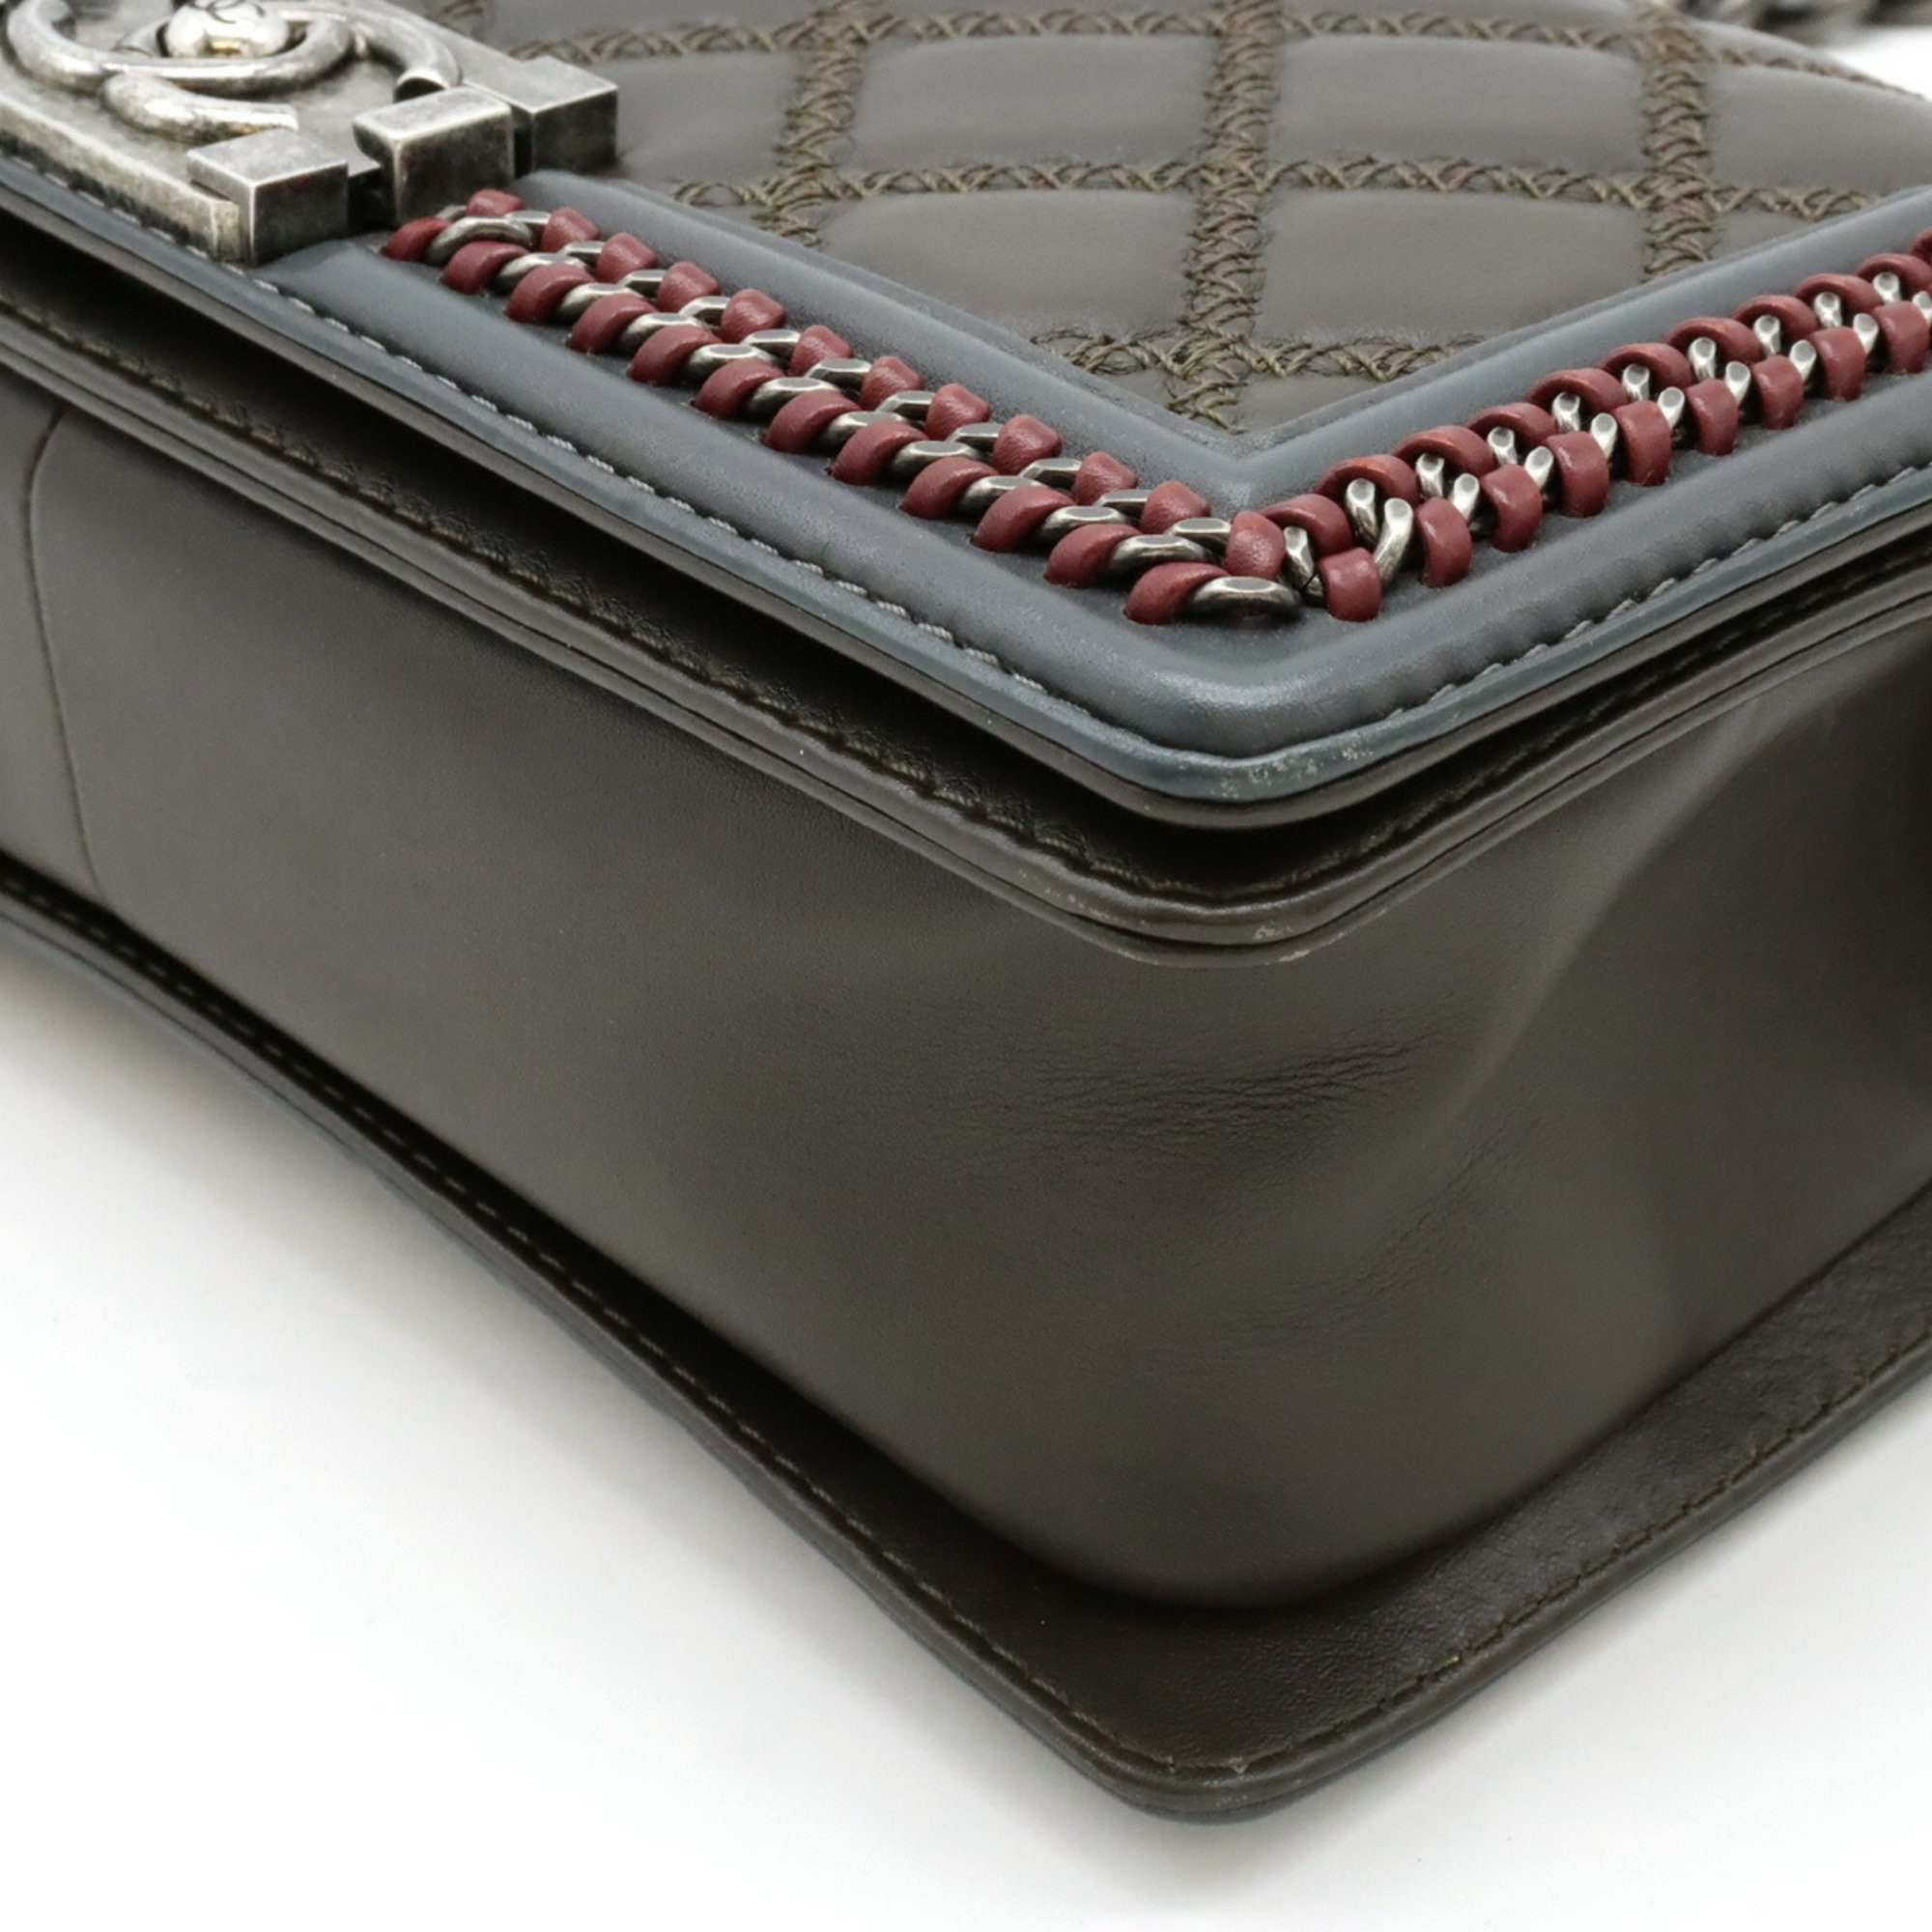 CHANEL Boy Chanel Flap Bag Luxury Chain Shoulder Leather Dark Khaki A94804